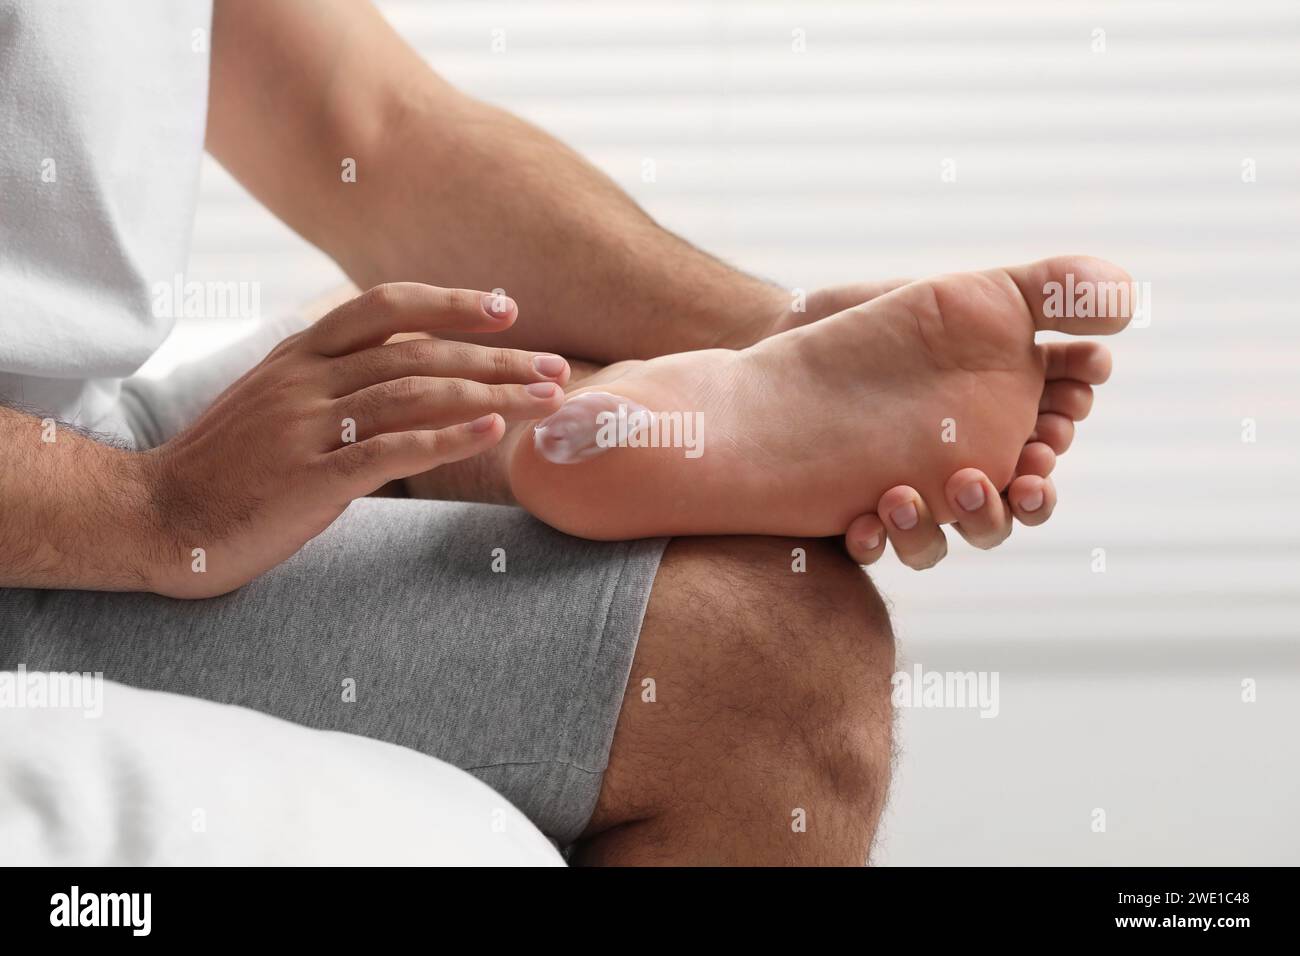 Uomo con pelle secca che applica crema sul piede sul letto, primo piano Foto Stock